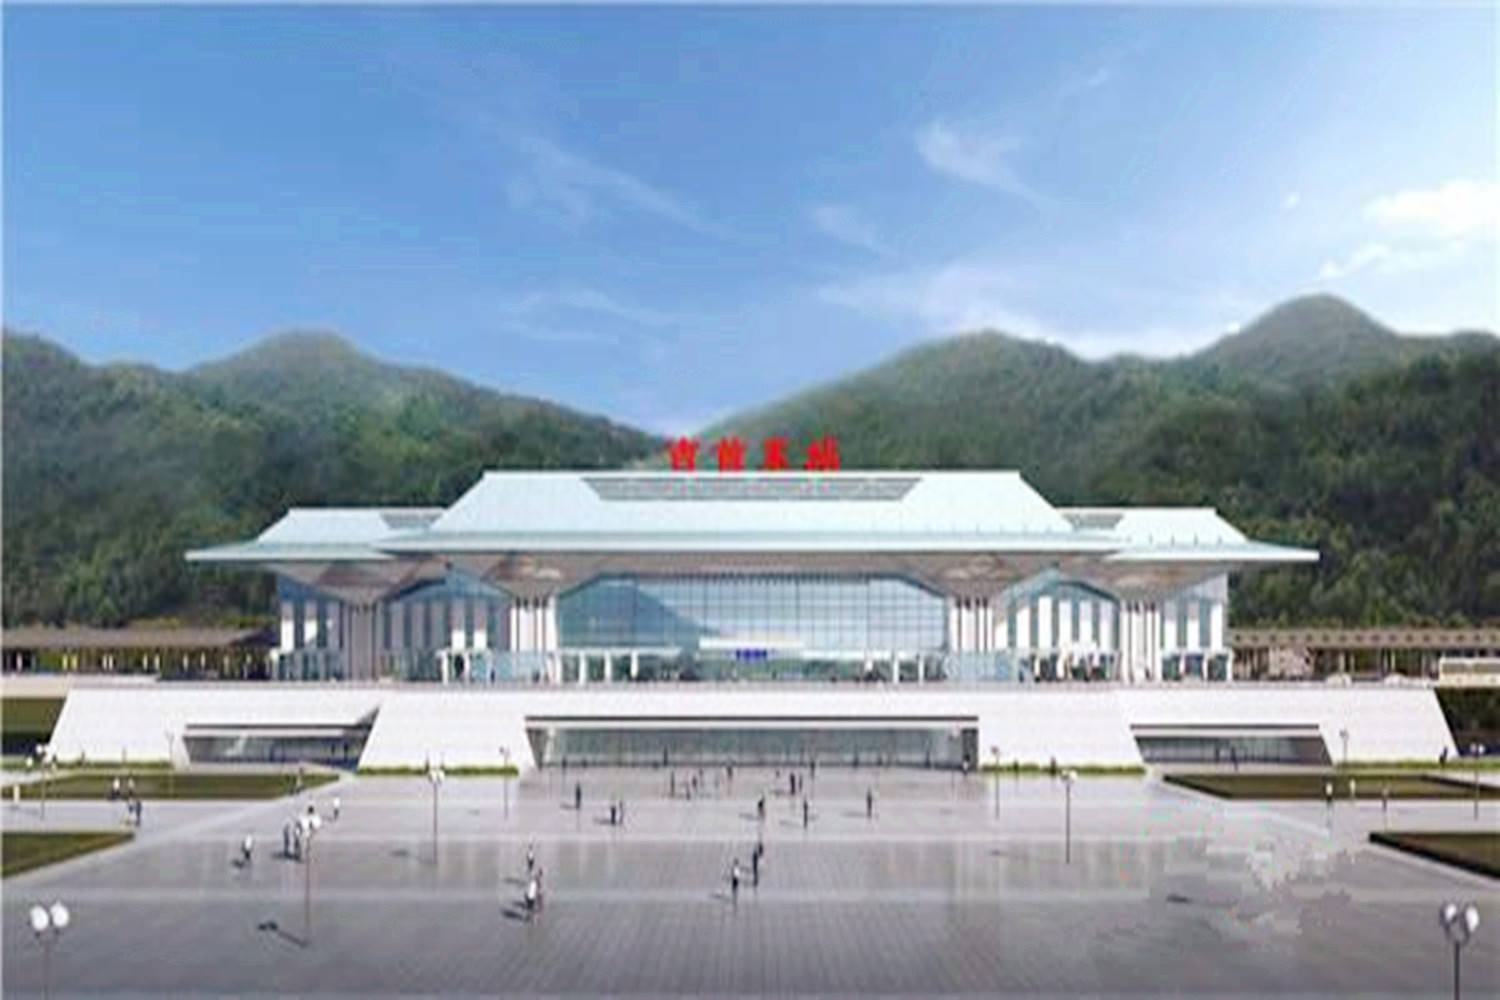 原创湖南在建一座高铁站,总投资约12.6亿元,预计2021年建成